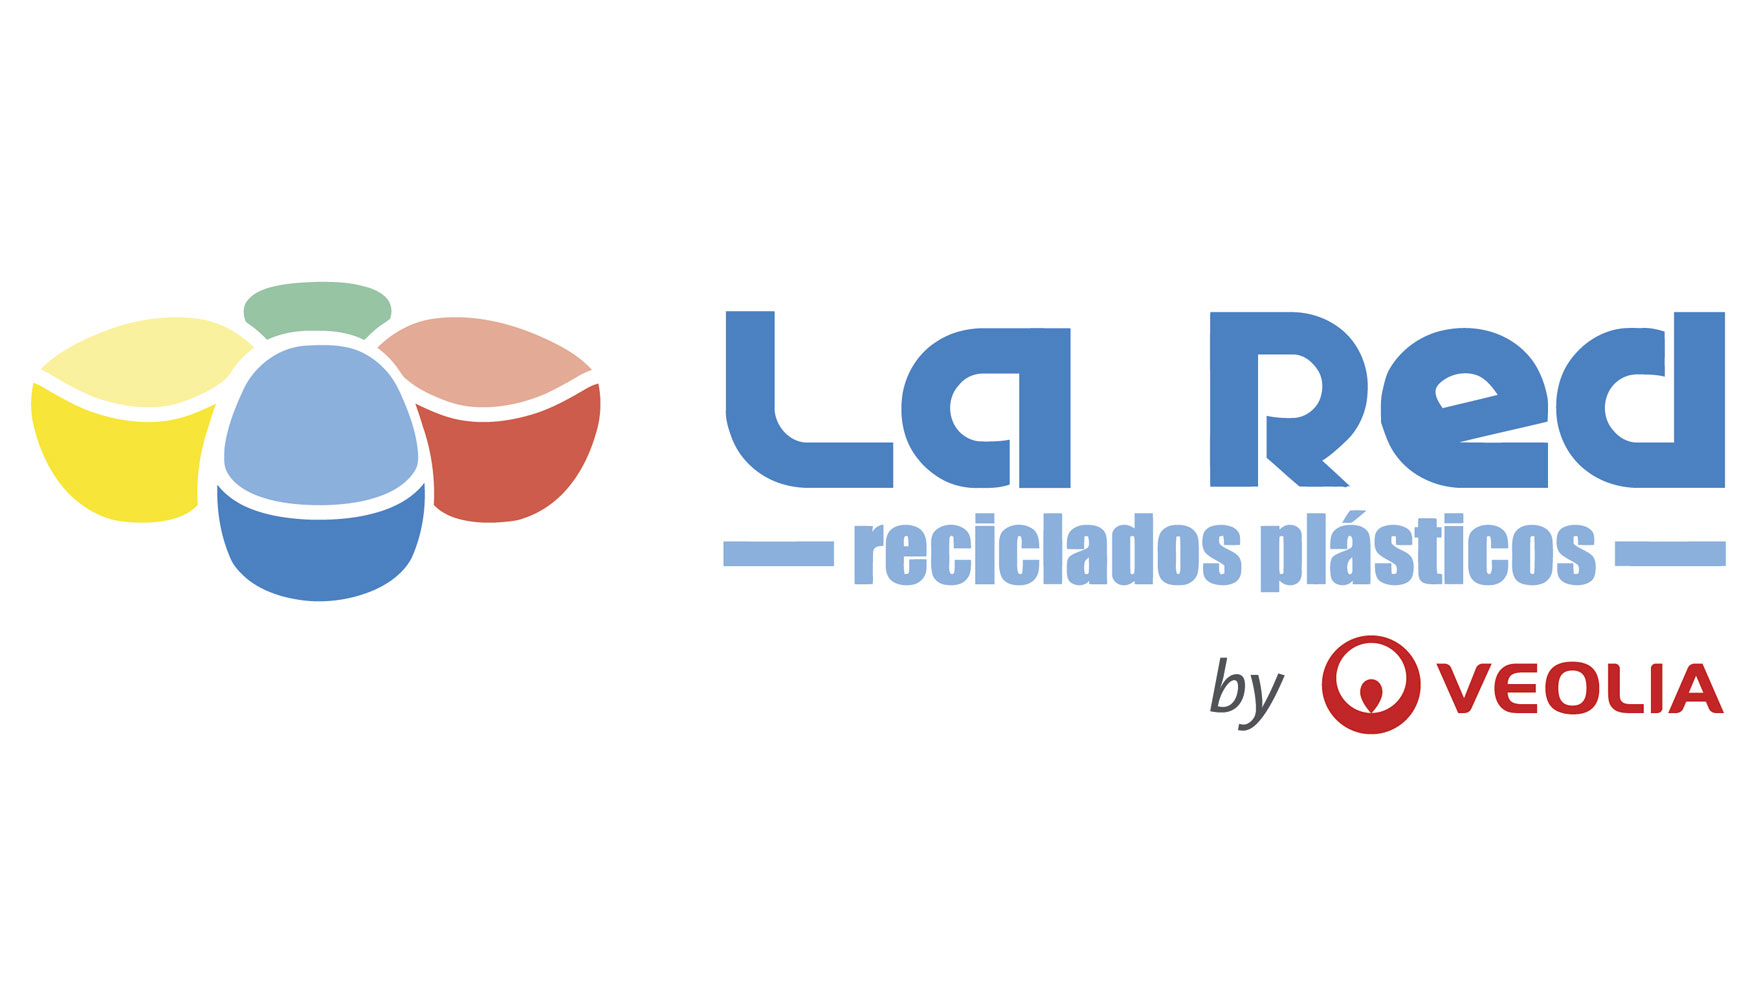 Desde hace treinta aos, La Red by Veolia destaca por su enfoque integral en la gestin de residuos y servicios adicionales para empresas...